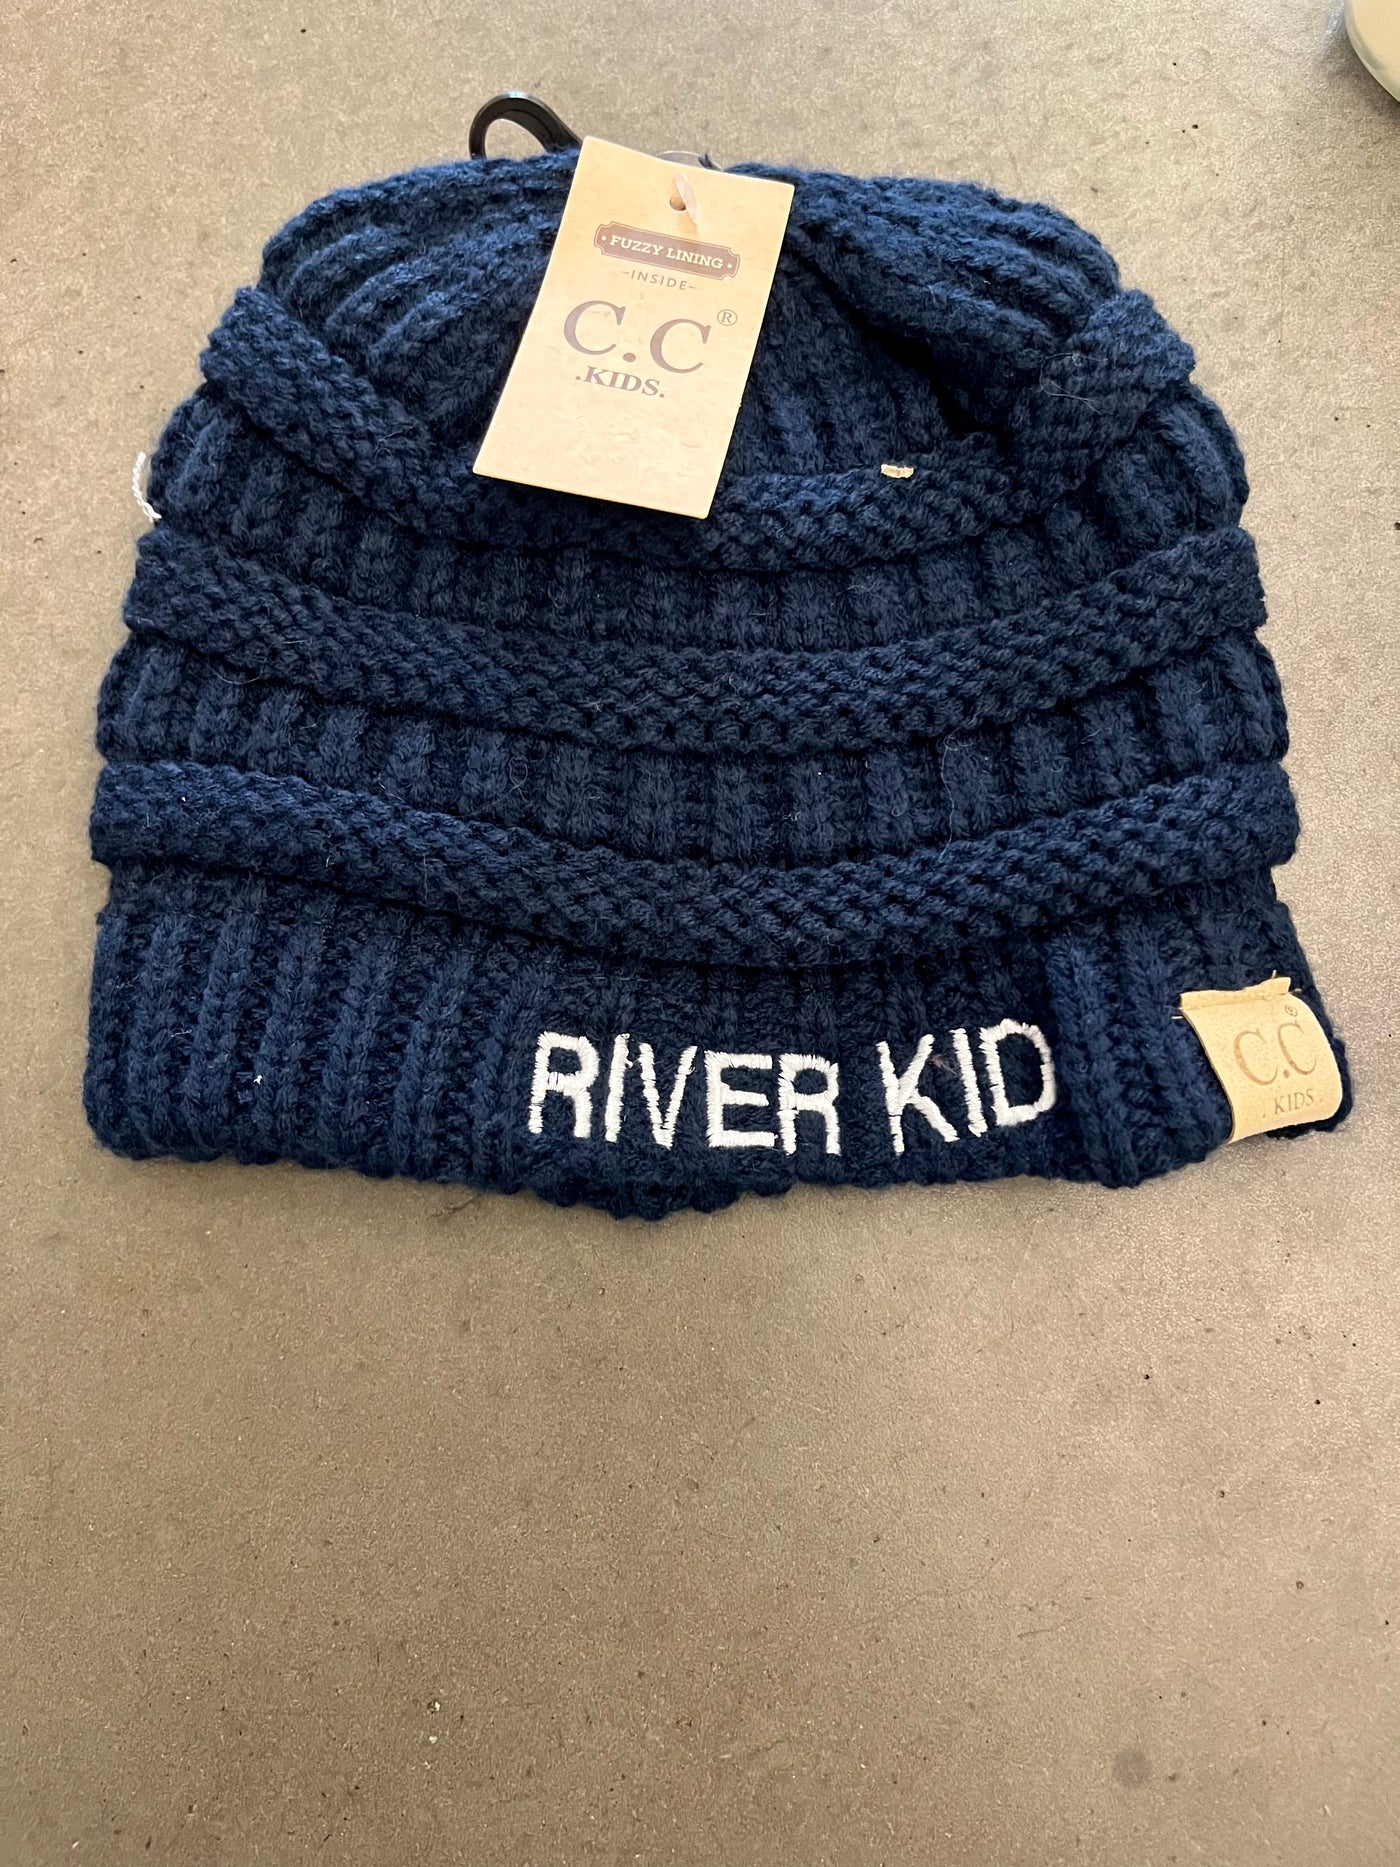 River kid beanie hats